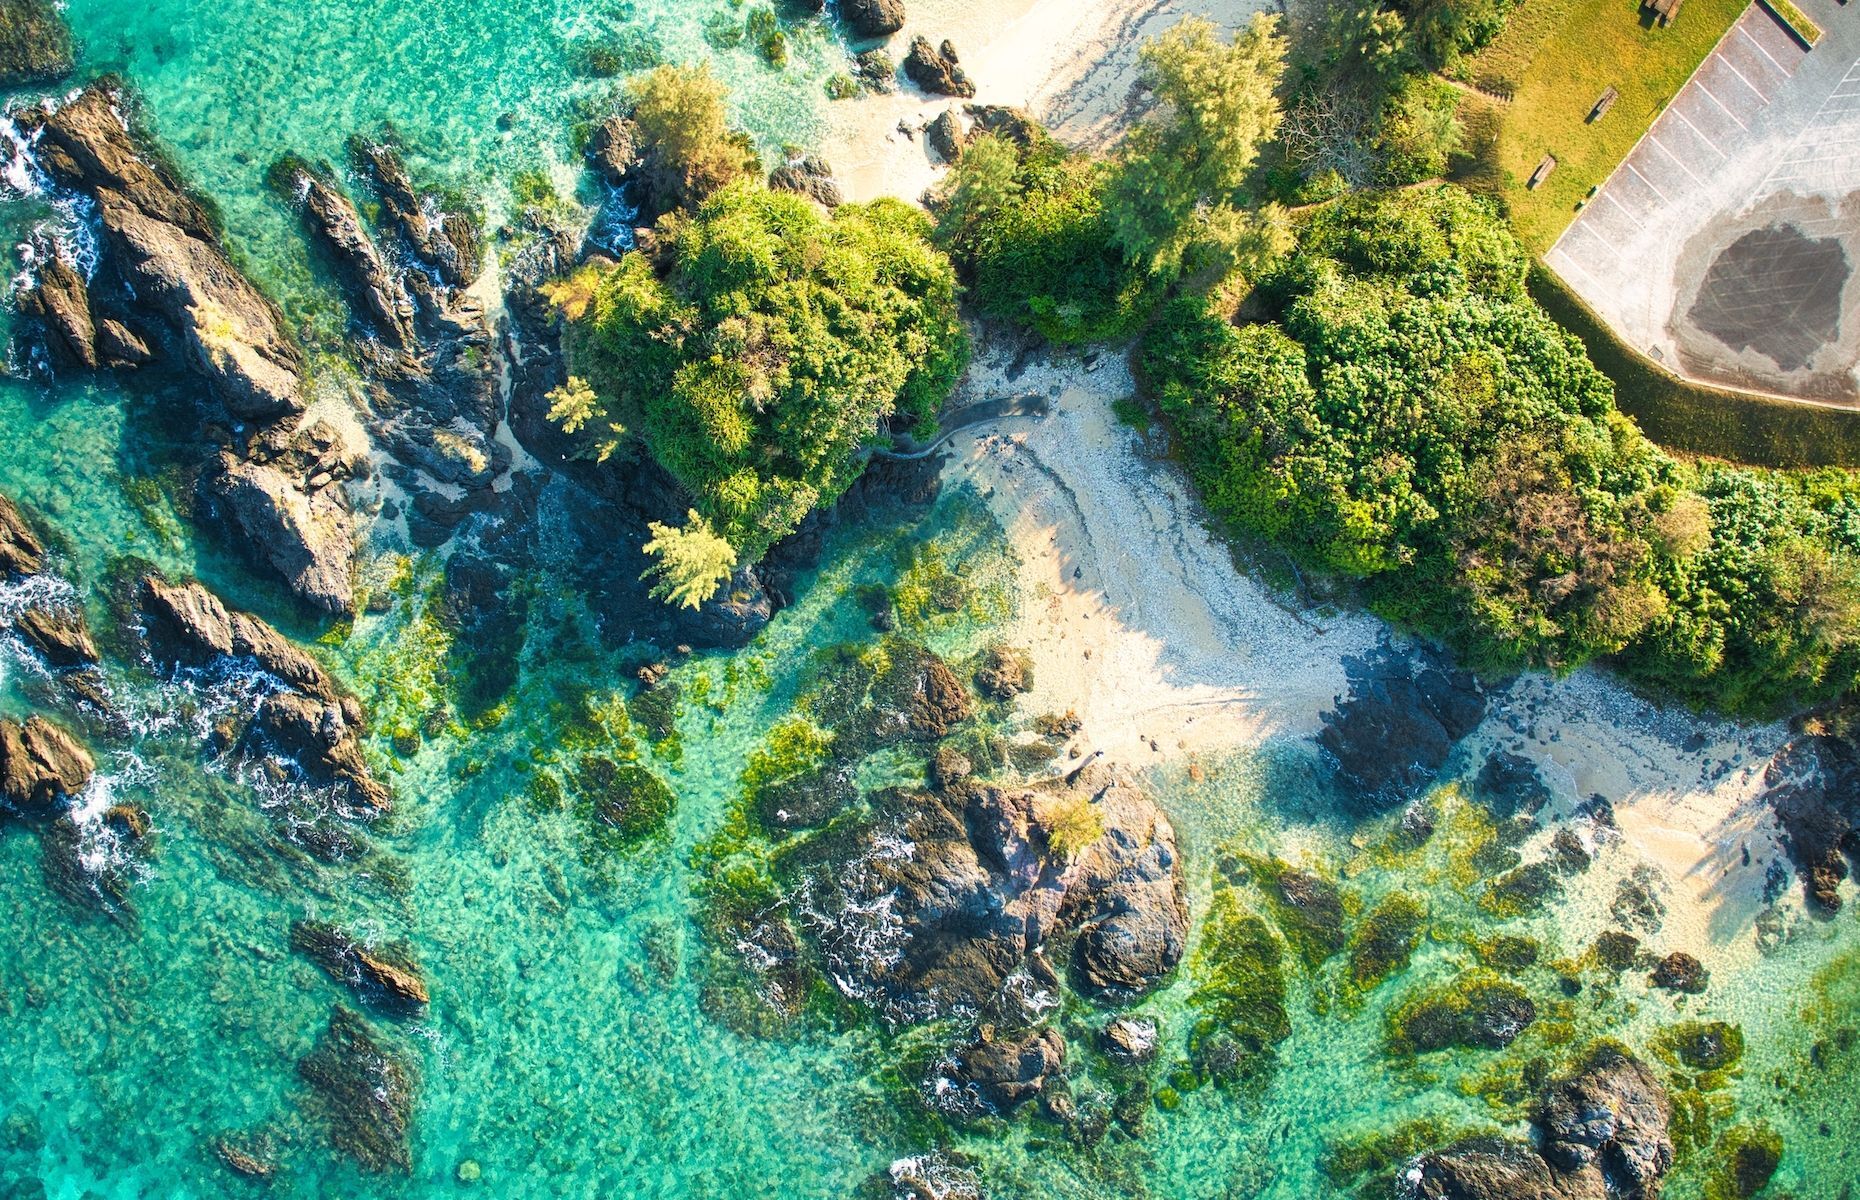 <p>Nichée au sud du Japon, dans les eaux cristallines du Pacifique, <a href="https://www.japan.travel/fr/destinations/okinawa/okinawa/">Okinawa</a> fascine par ses plages de sable blanc et ses récifs coralliens, parfaits pour la plongée. Profitez-en pour explorer les vestiges du royaume de Ryukyu au château de Shuri et vous imprégner de la quiétude des jardins Shikina-en. Célèbre pour la <a href="https://visitokinawajapan.com/discover/food-and-longevity/">longévité</a> de ses habitants, l’île d’Okinawa offre également une qualité de vie exceptionnelle aux aventuriers qui voudraient y rester un peu plus longtemps.</p>